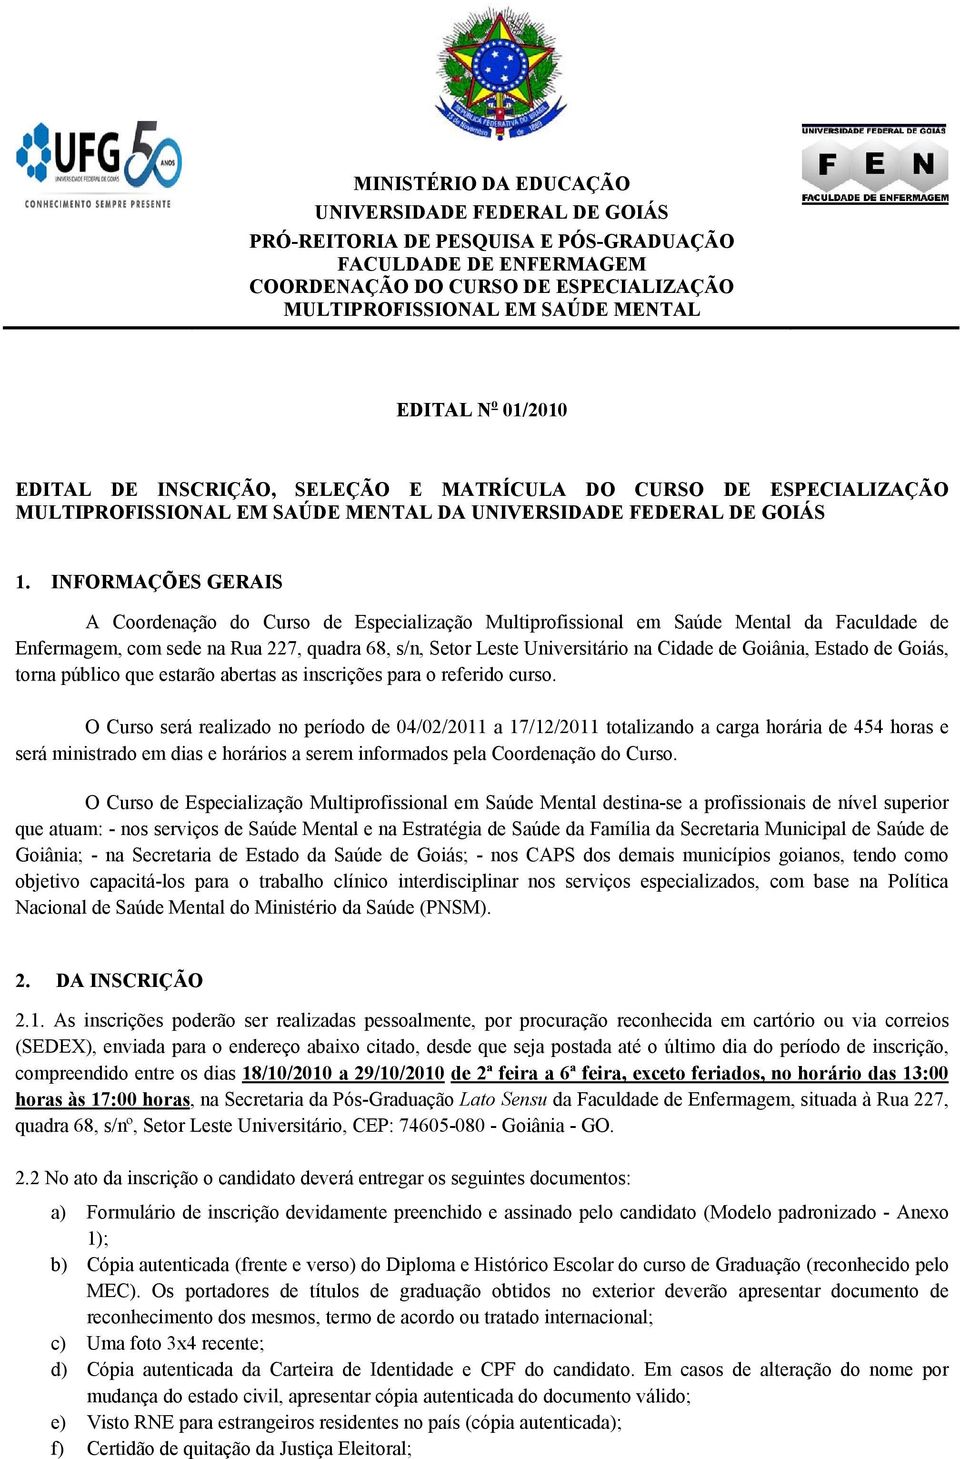 Goiânia, Estado de Goiás, torna público que estarão abertas as inscrições para o referido curso.